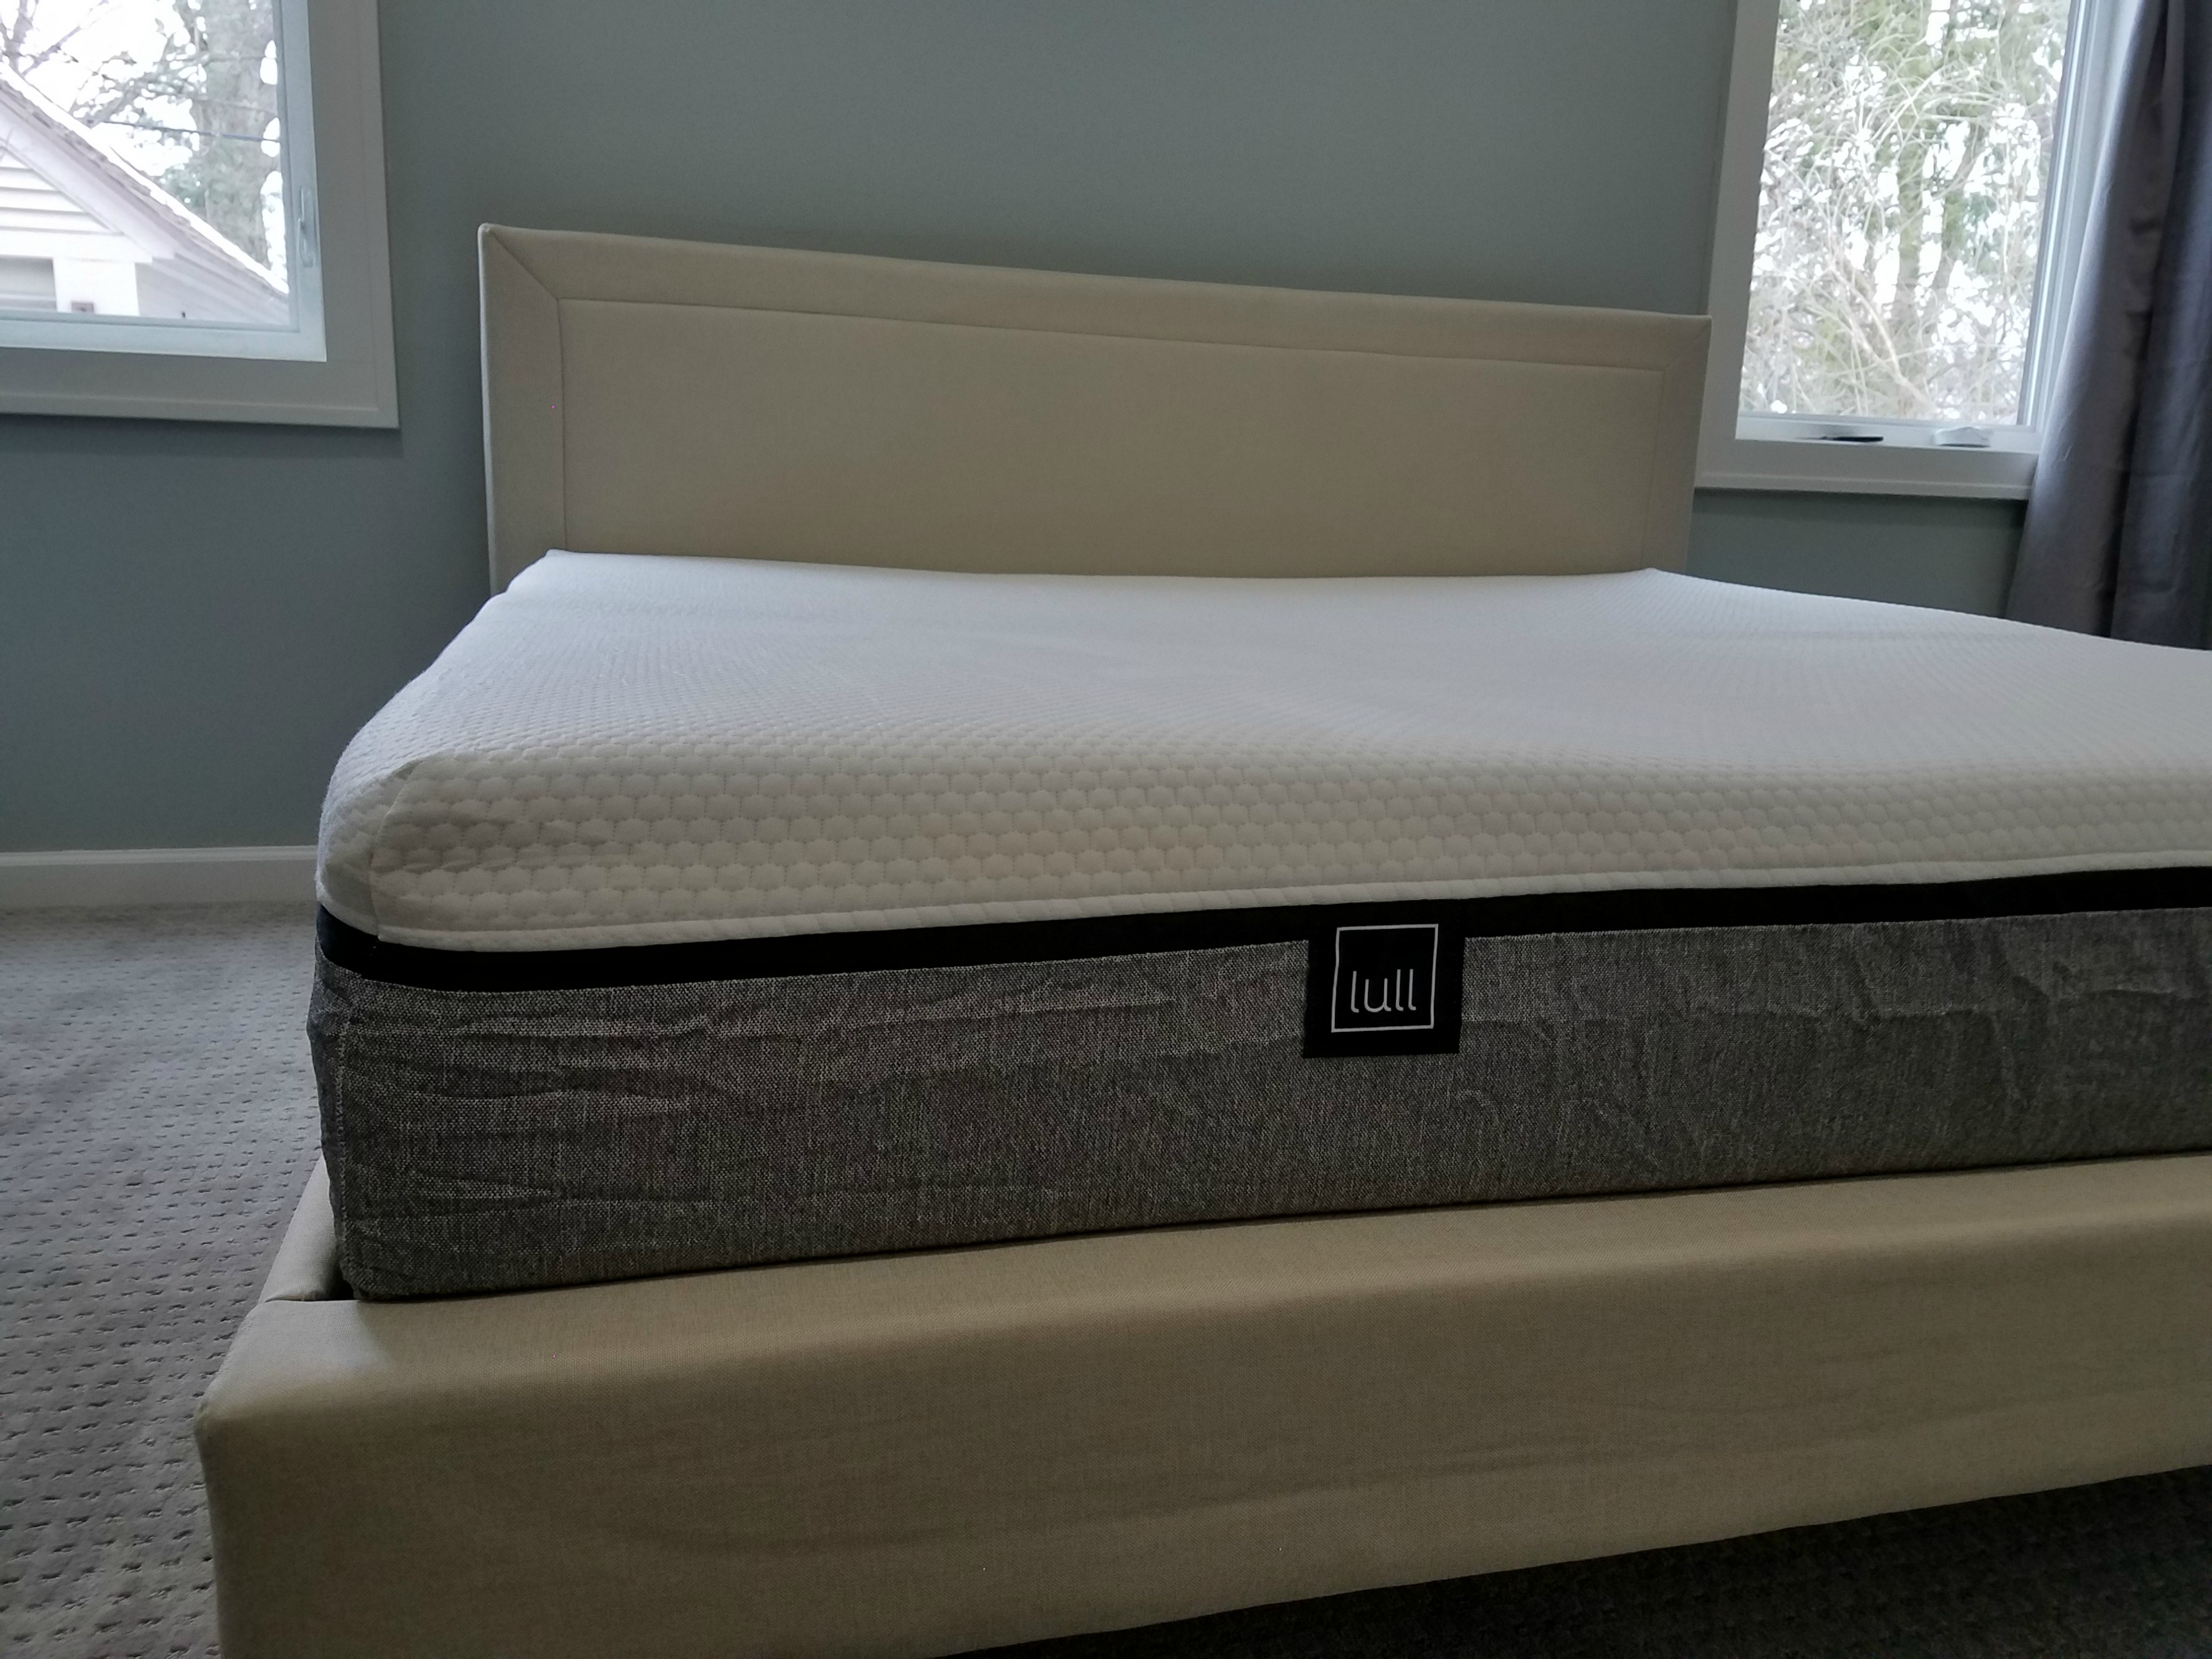 lull king size mattress size